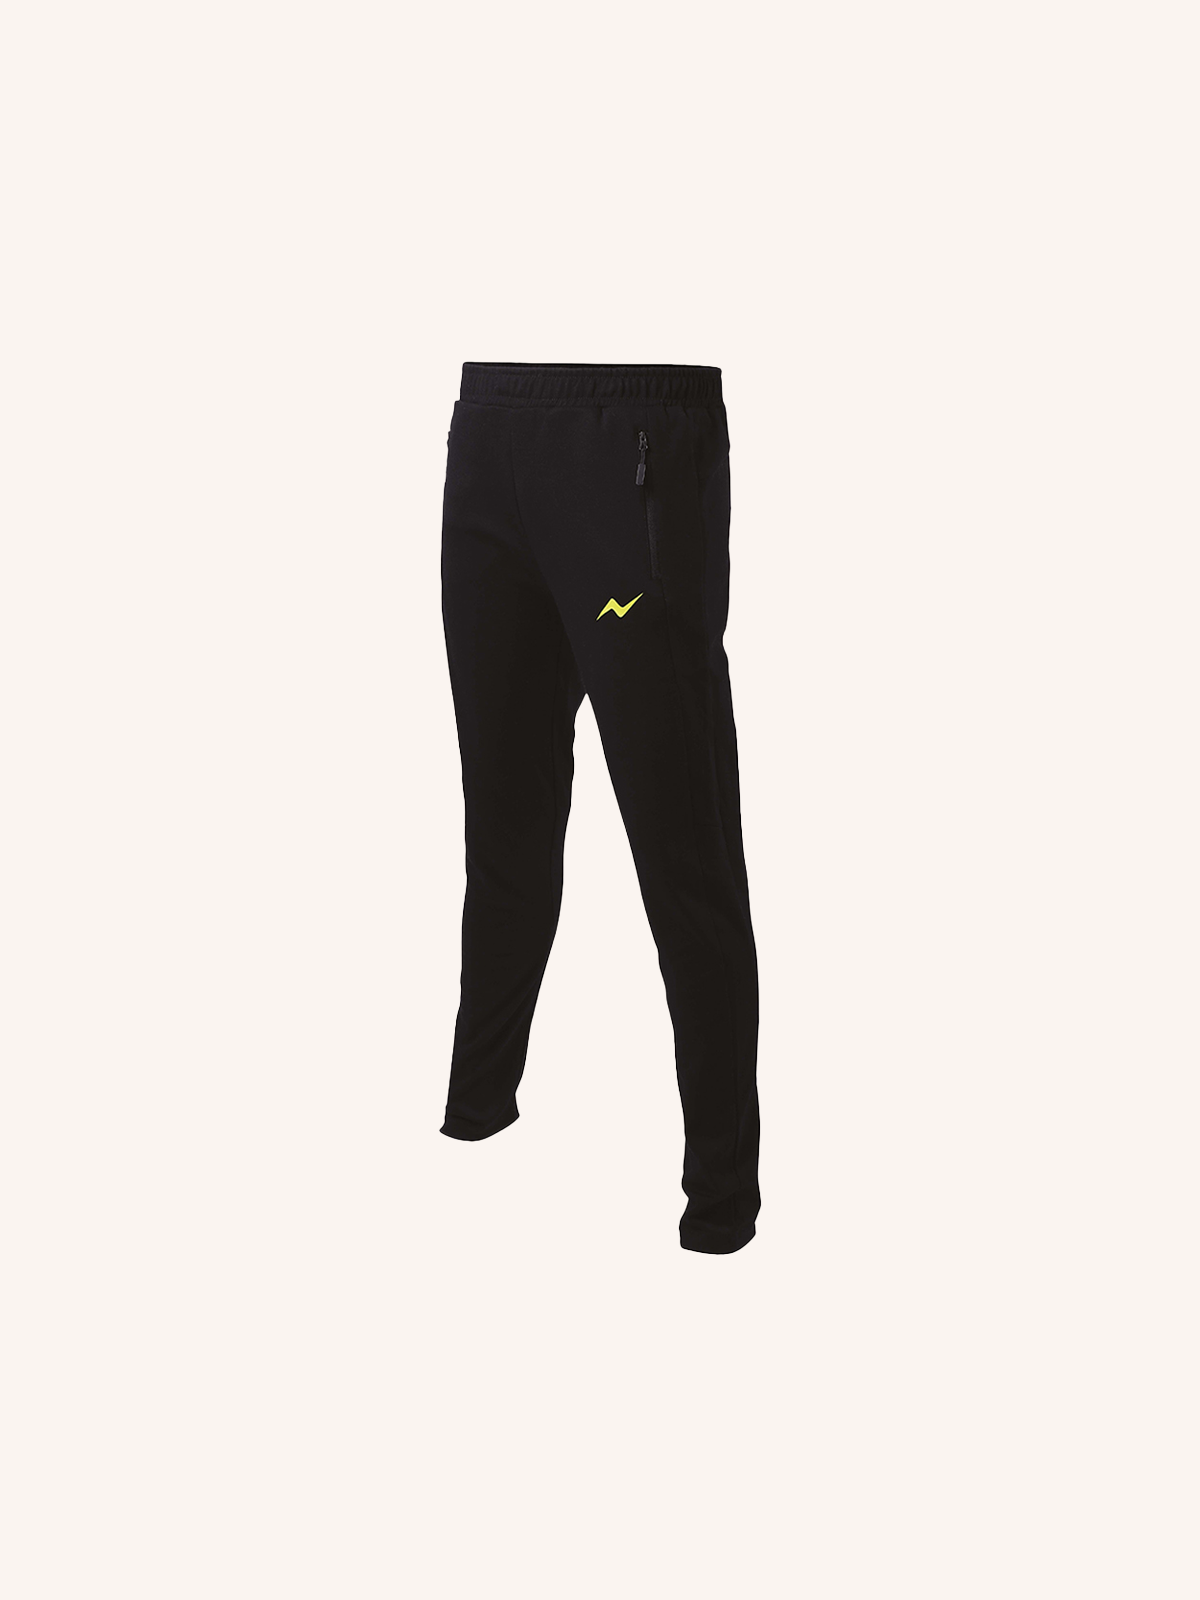 Pantalone Slim Fit per Uomo | Tasche con Zip | Confezione Singola | PRS 201